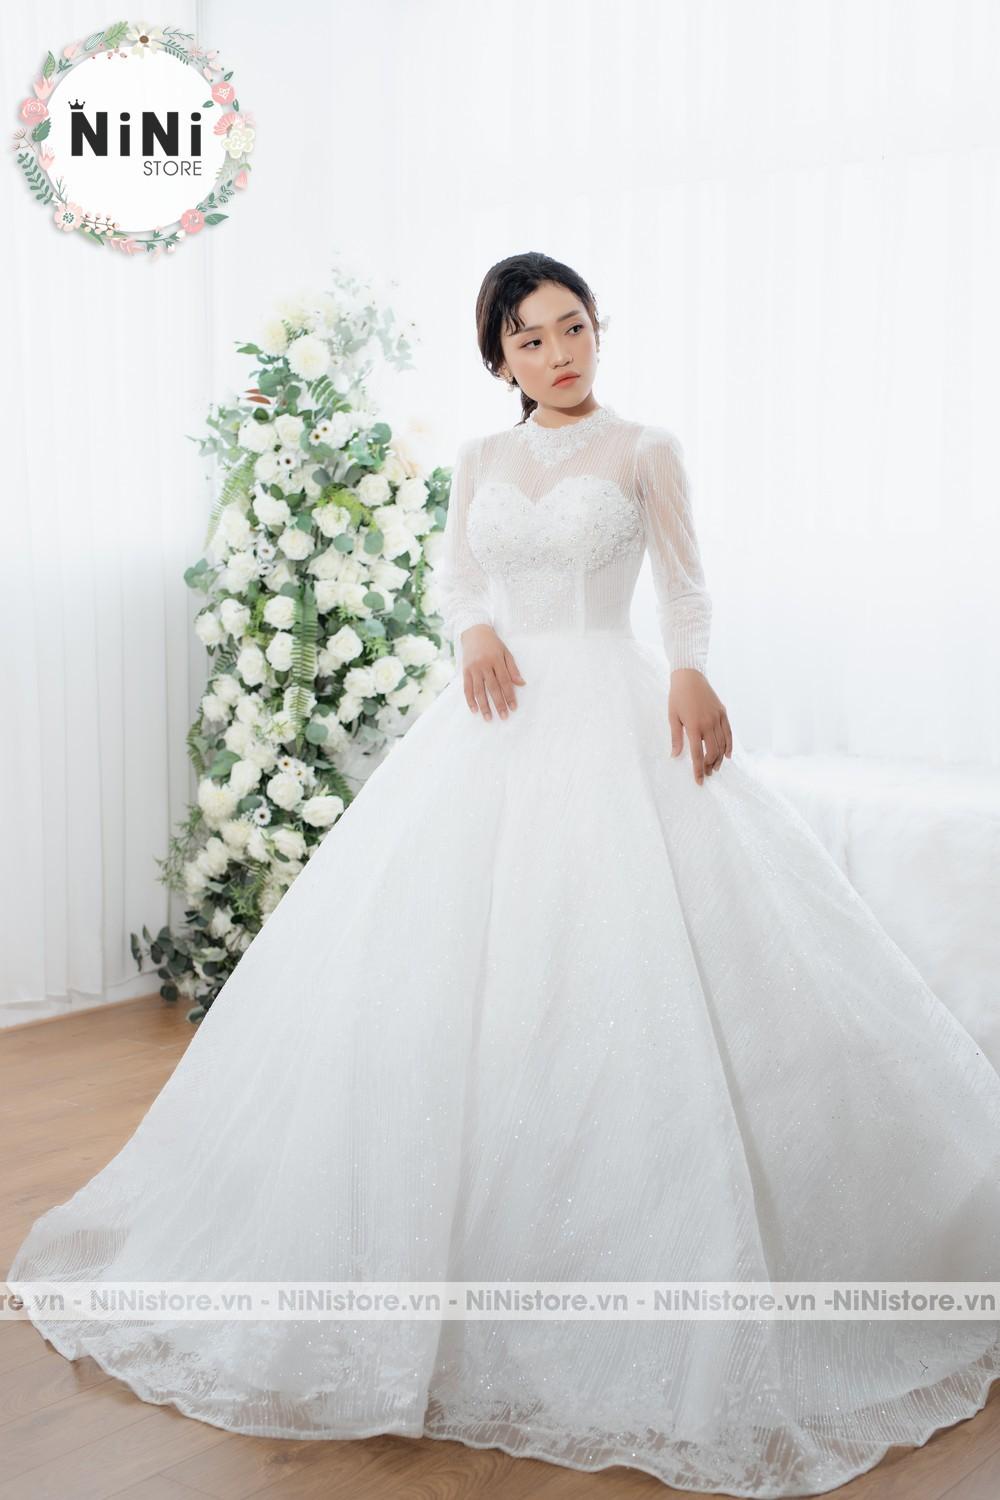 5 mẫu váy cưới sang trọng dành cho cô dâu mùa cưới đầu năm